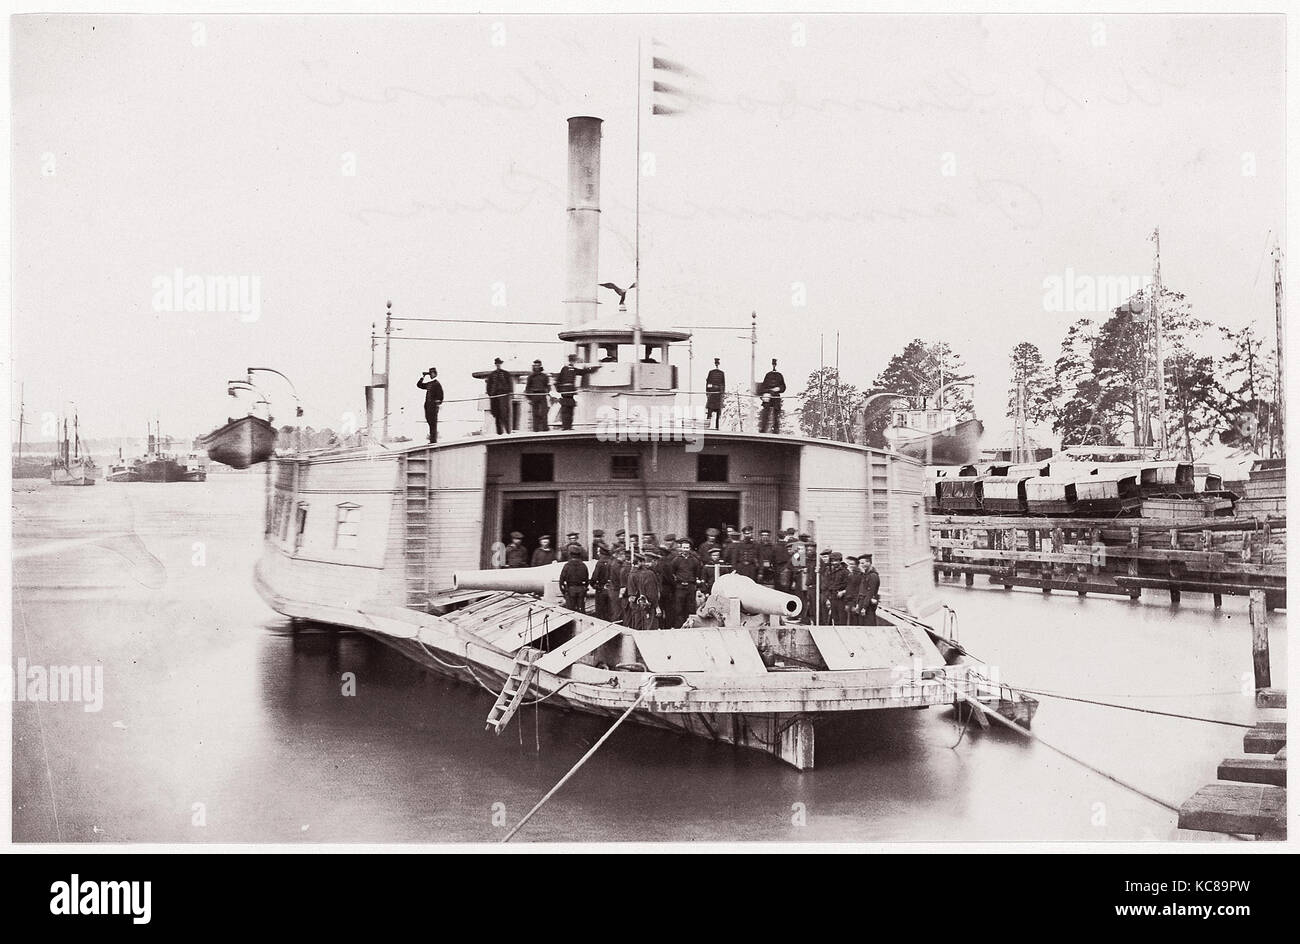 Canonnière américaine 'Commodore Perry' sur Pamunkey River, Timothy H. O'Sullivan, 1861-65 Banque D'Images